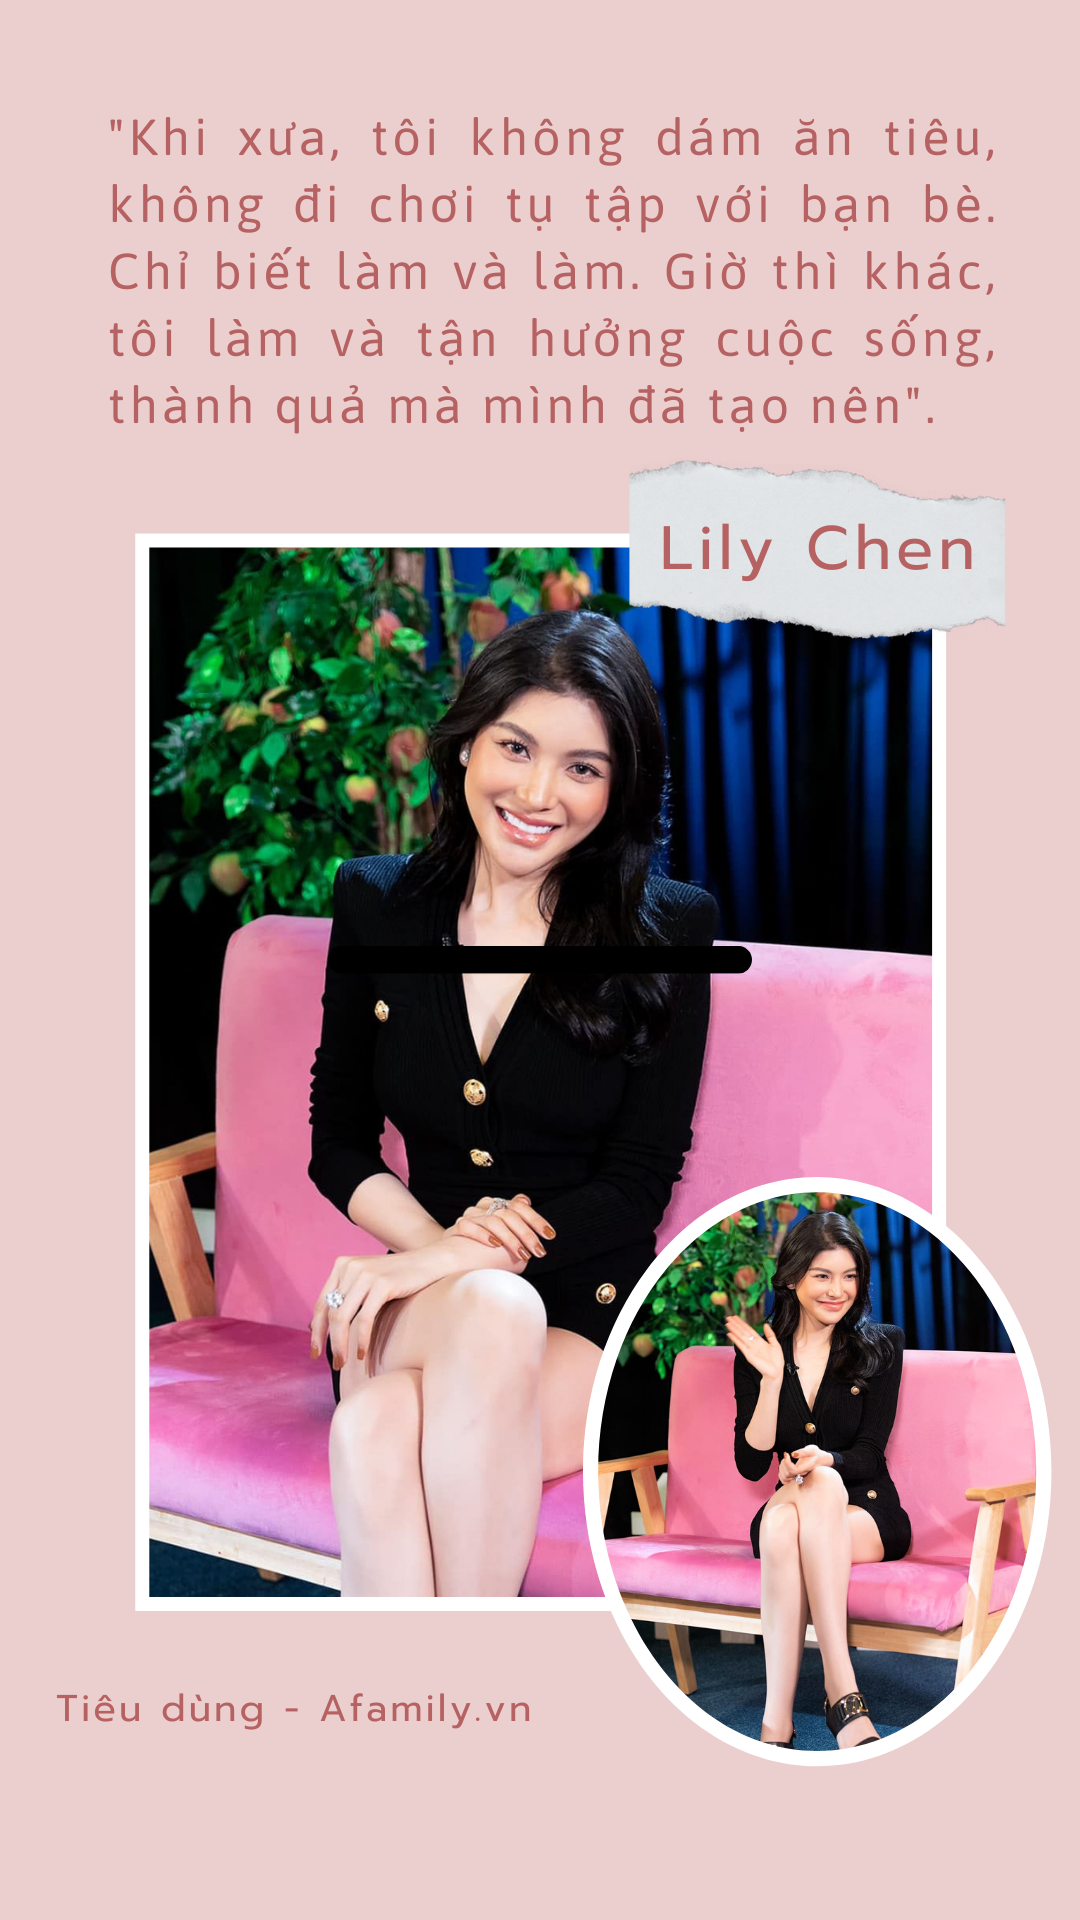 Lily Chen bán son thời Đại học để mua đất, sở thích sắm đồ hiệu và từ thiện lại còn đang xây dựng 